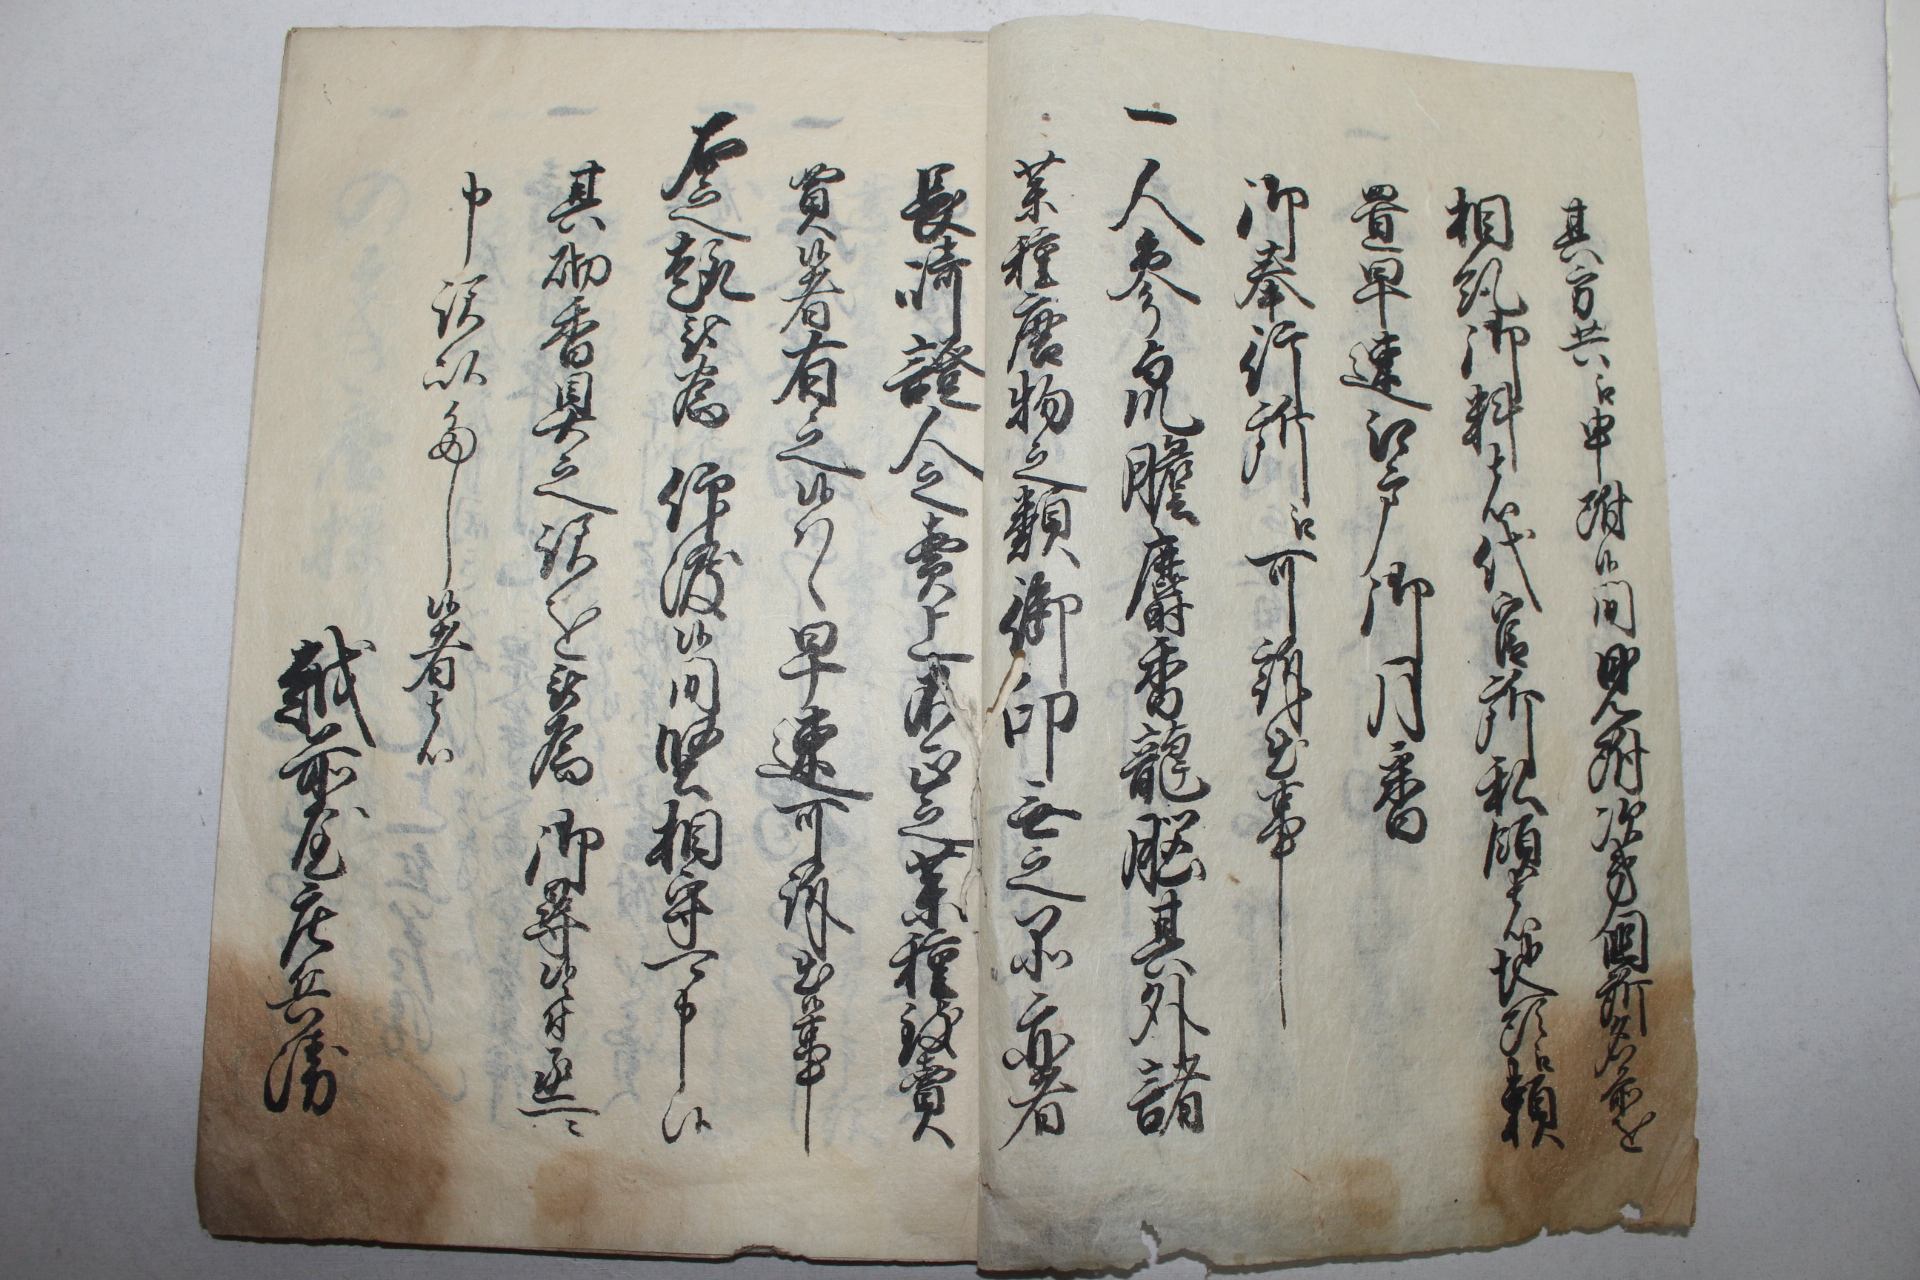 1717년(亨保2年) 일본필사본 1책